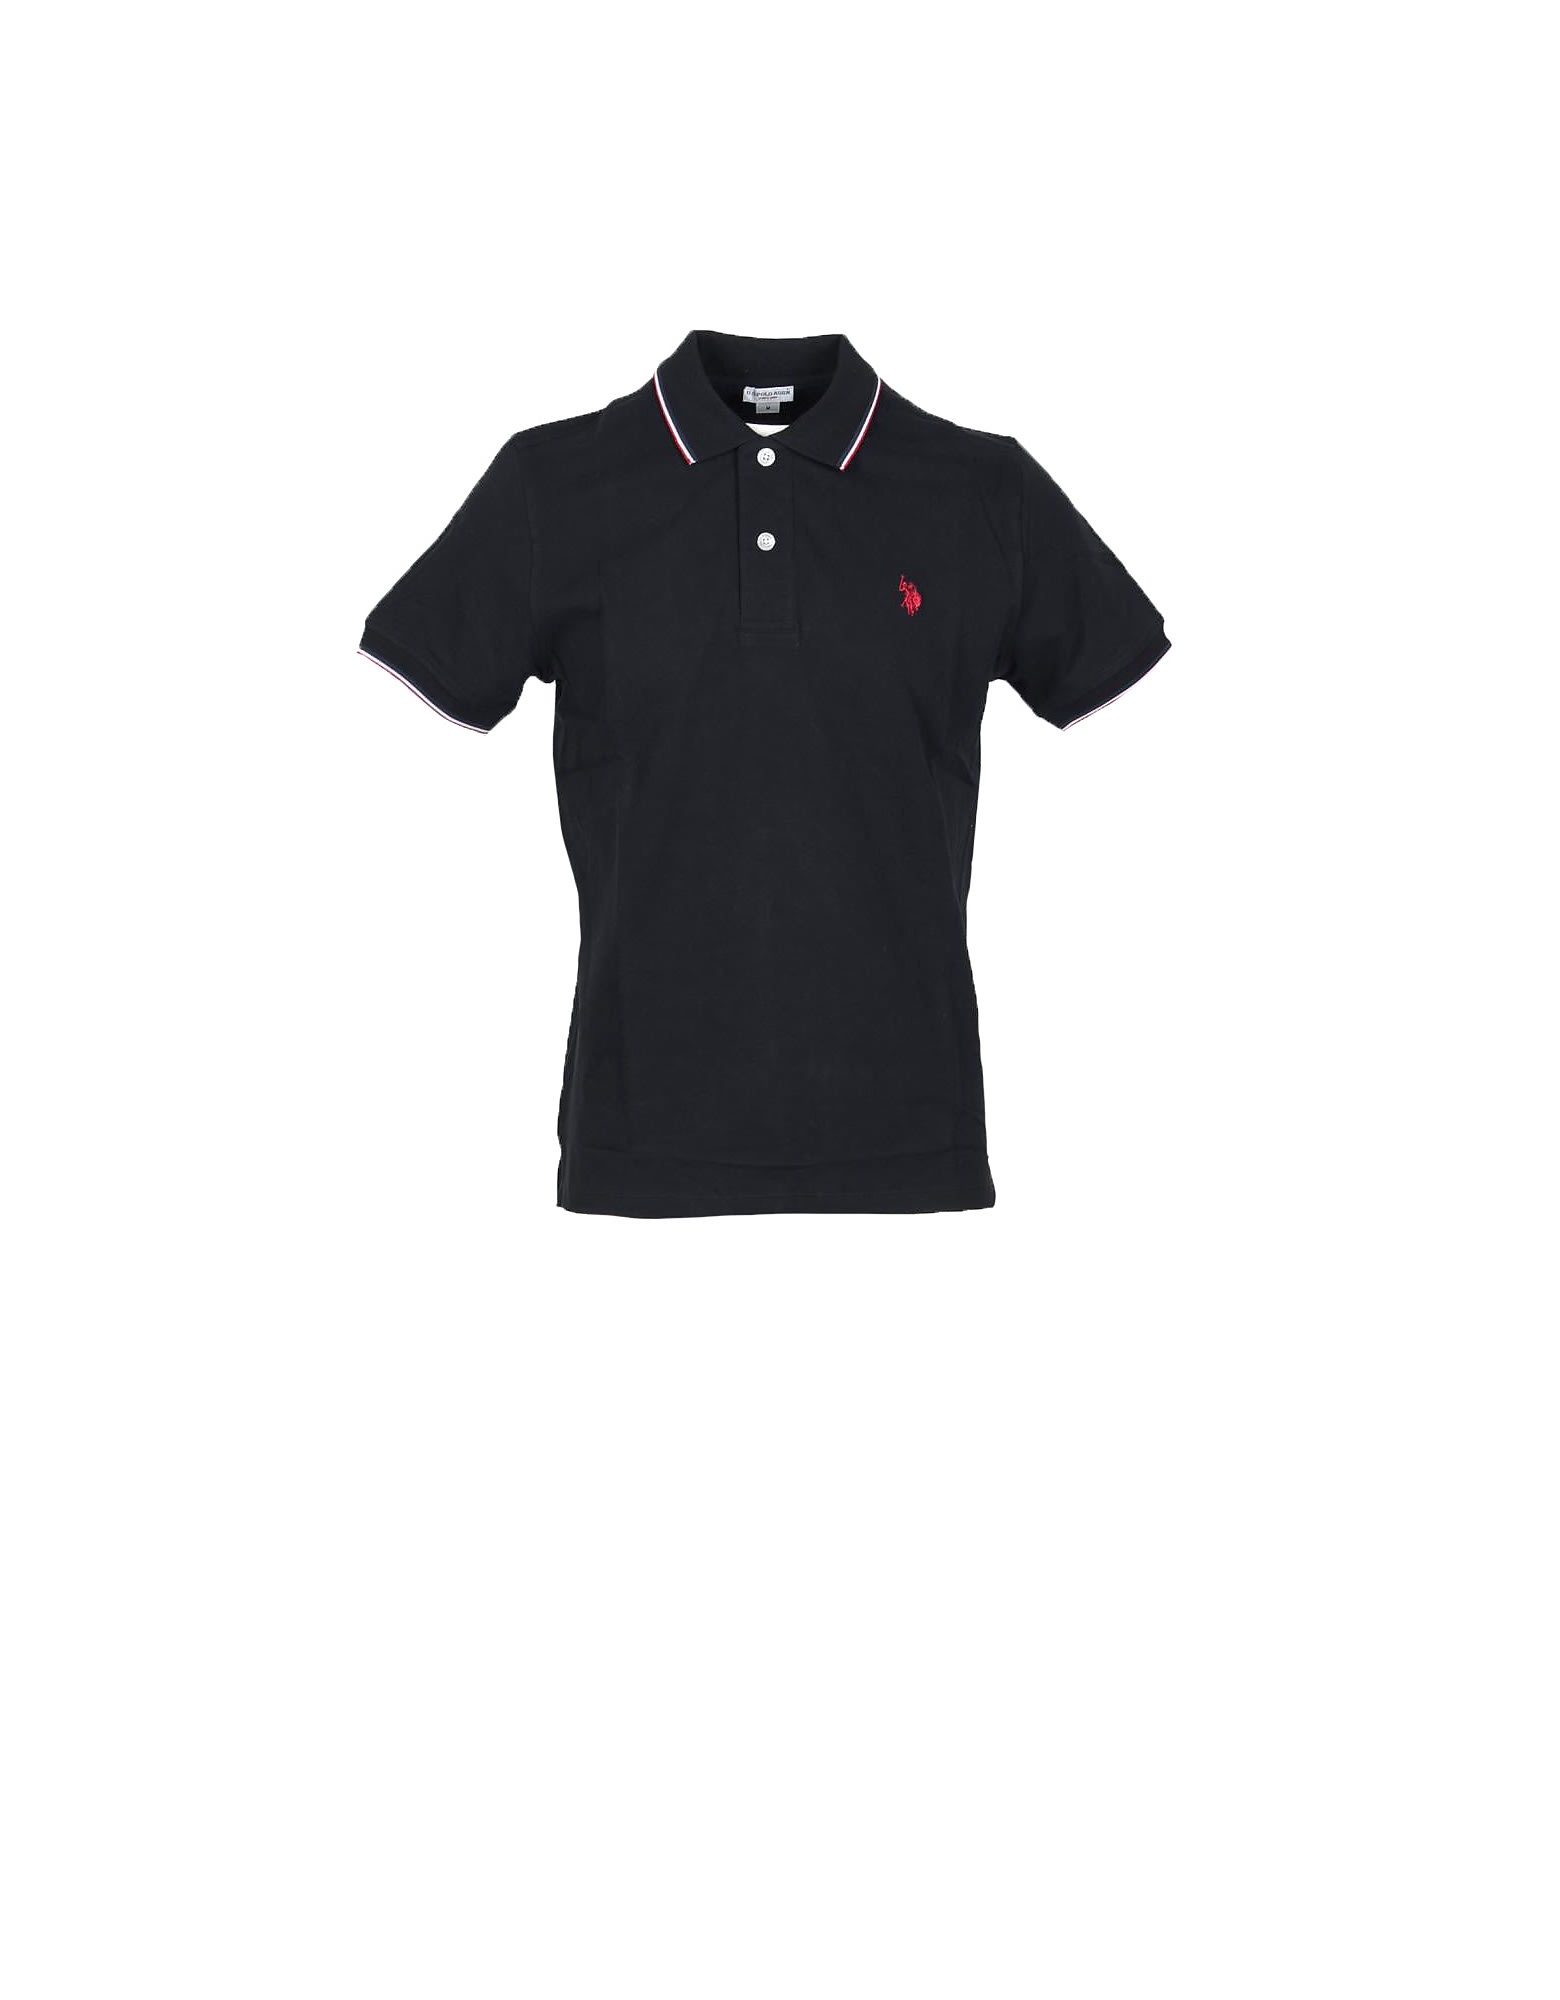 U.s. Polo Assn. Black Cotton Mens Polo Shirt